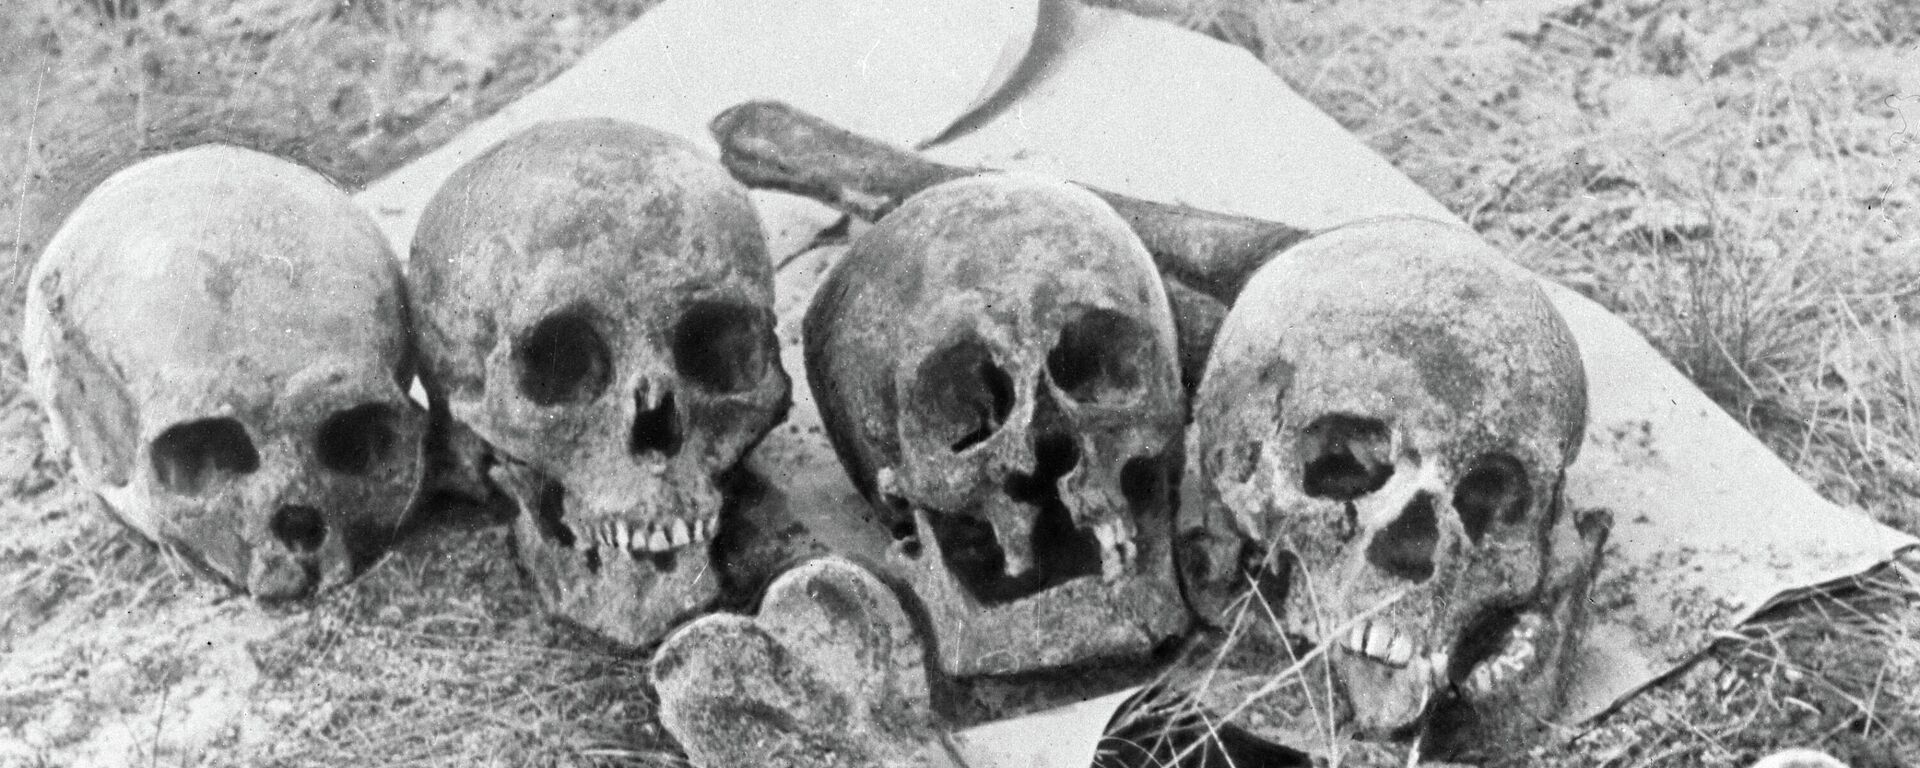 Черепа и кости жертв нацистов и их эстонских пособников - Sputnik Латвия, 1920, 22.06.2021